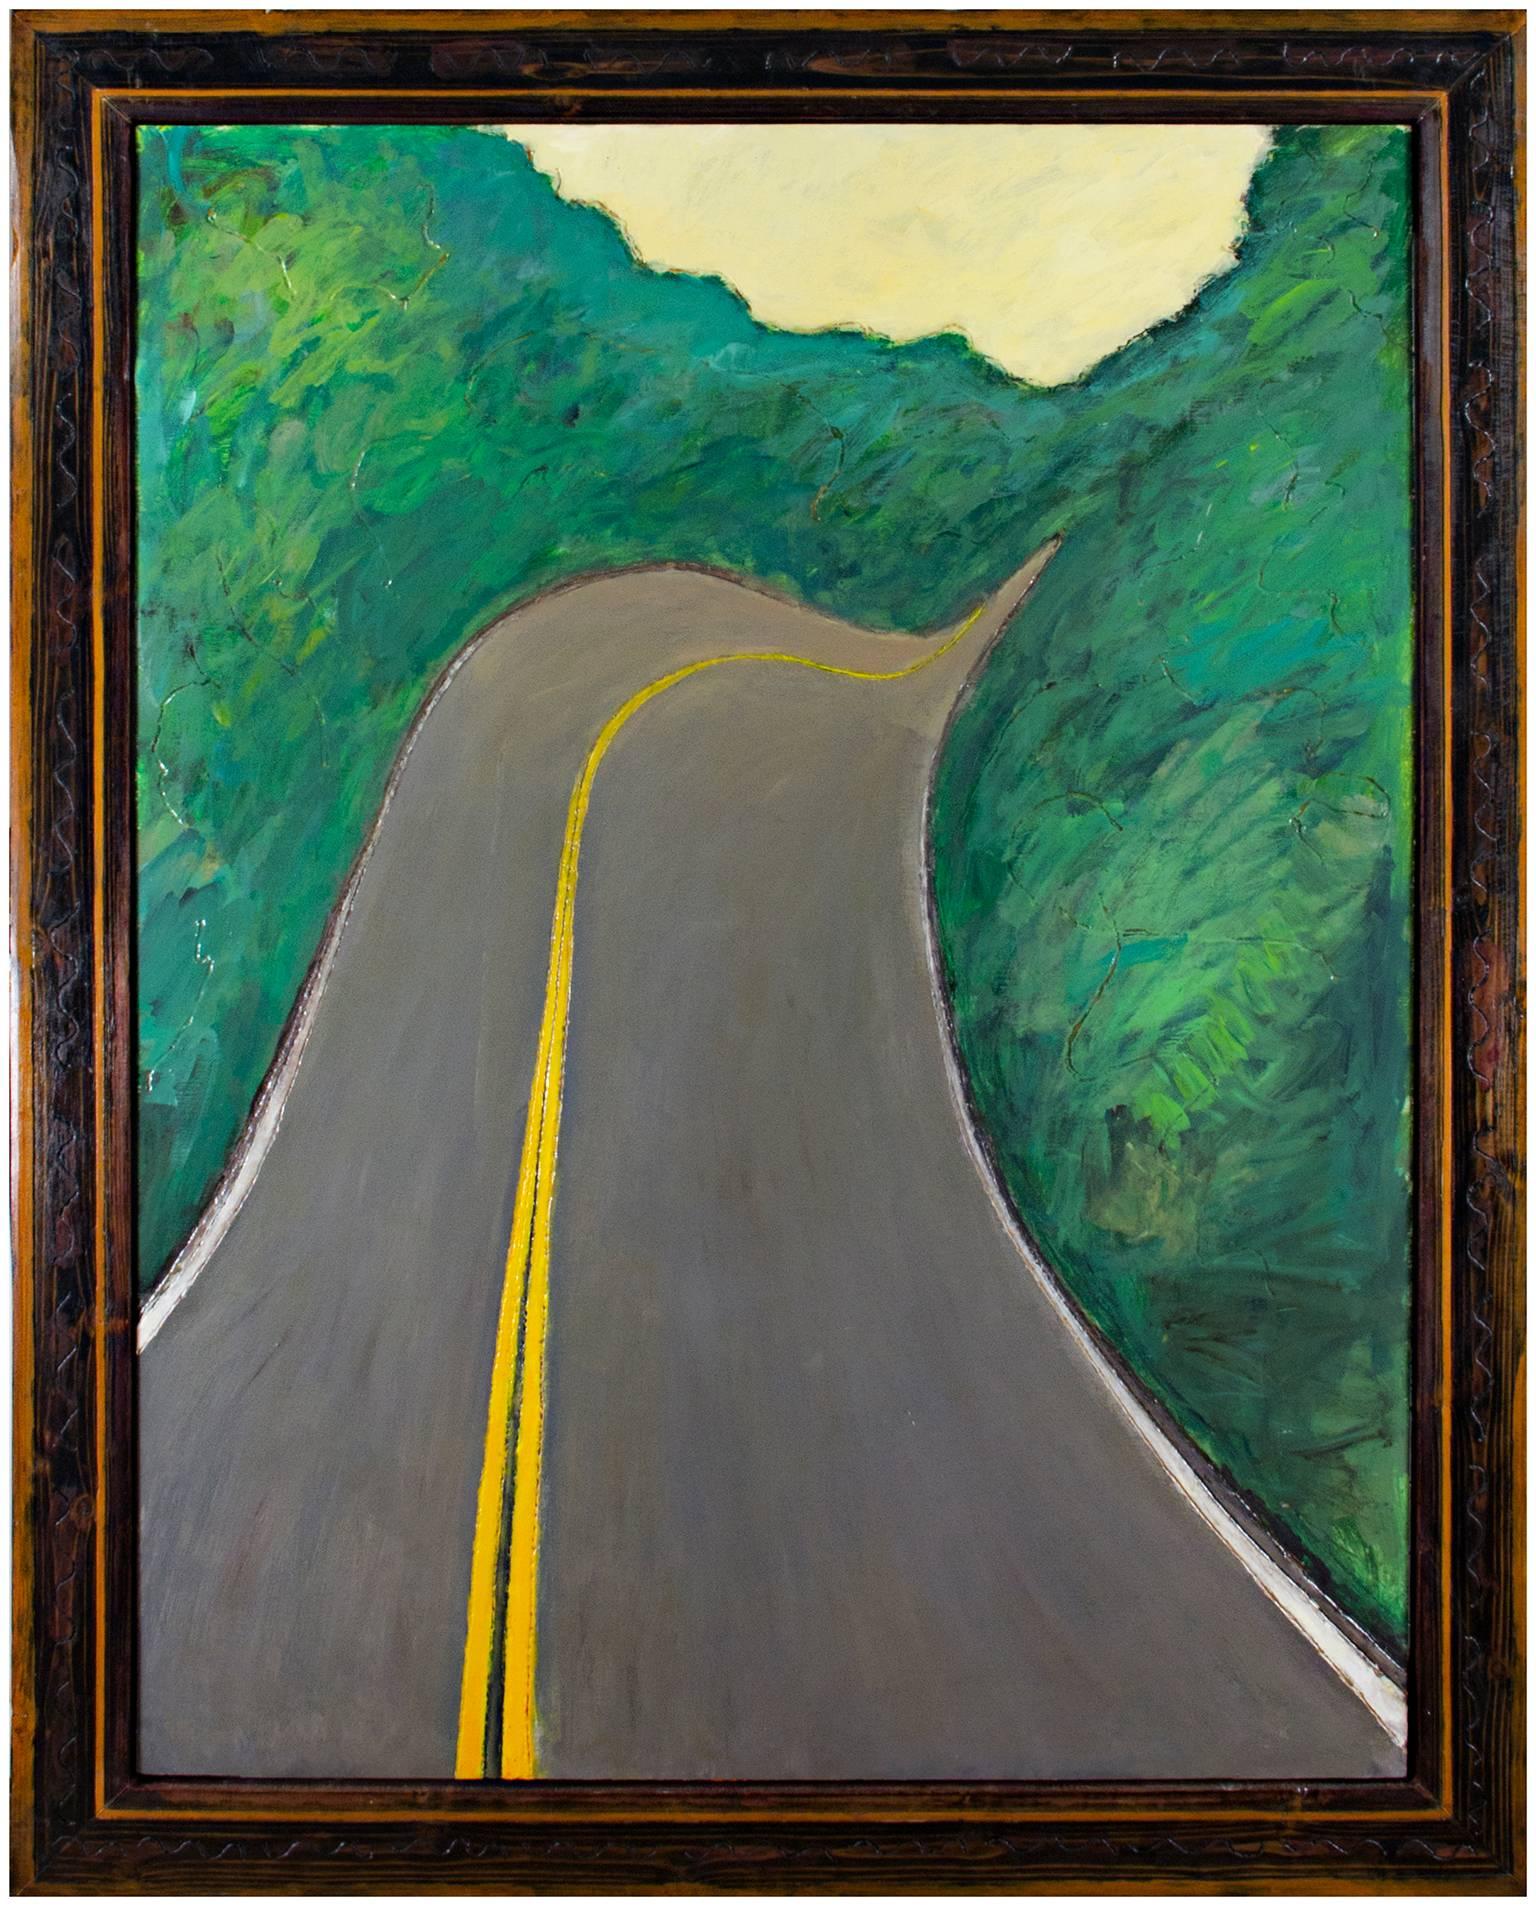 "Velvet Highway" (Hwy. K) est une peinture à l'huile originale sur bois de Robert Richter. L'artiste a signé le tableau au dos. Cette peinture représente une autoroute du Wisconsin qui traverse des forêts verdoyantes. La peinture a des parties